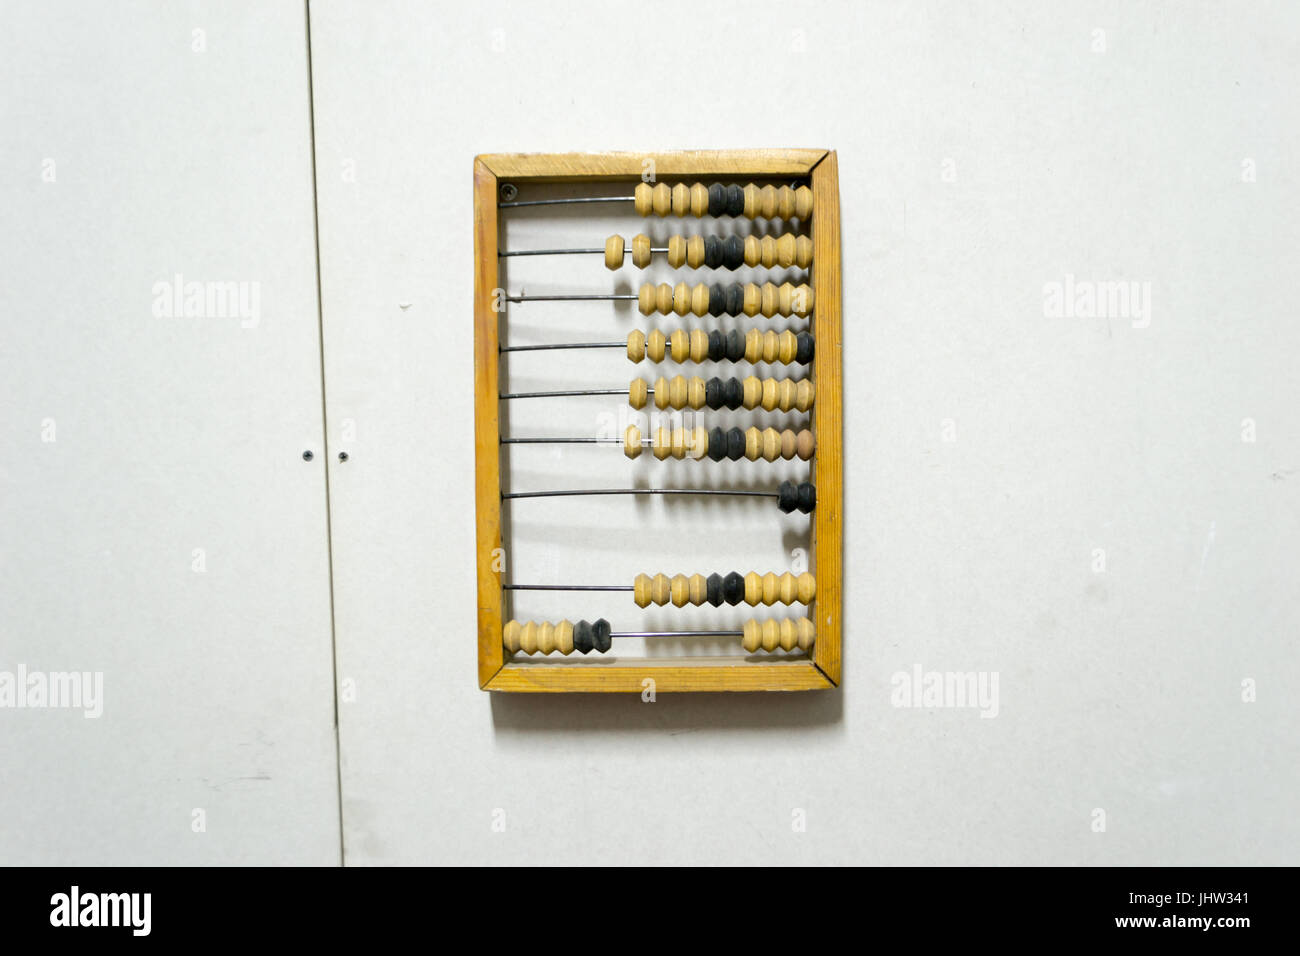 In legno antico abacus, appeso alla parete del muro a secco. Foto Stock